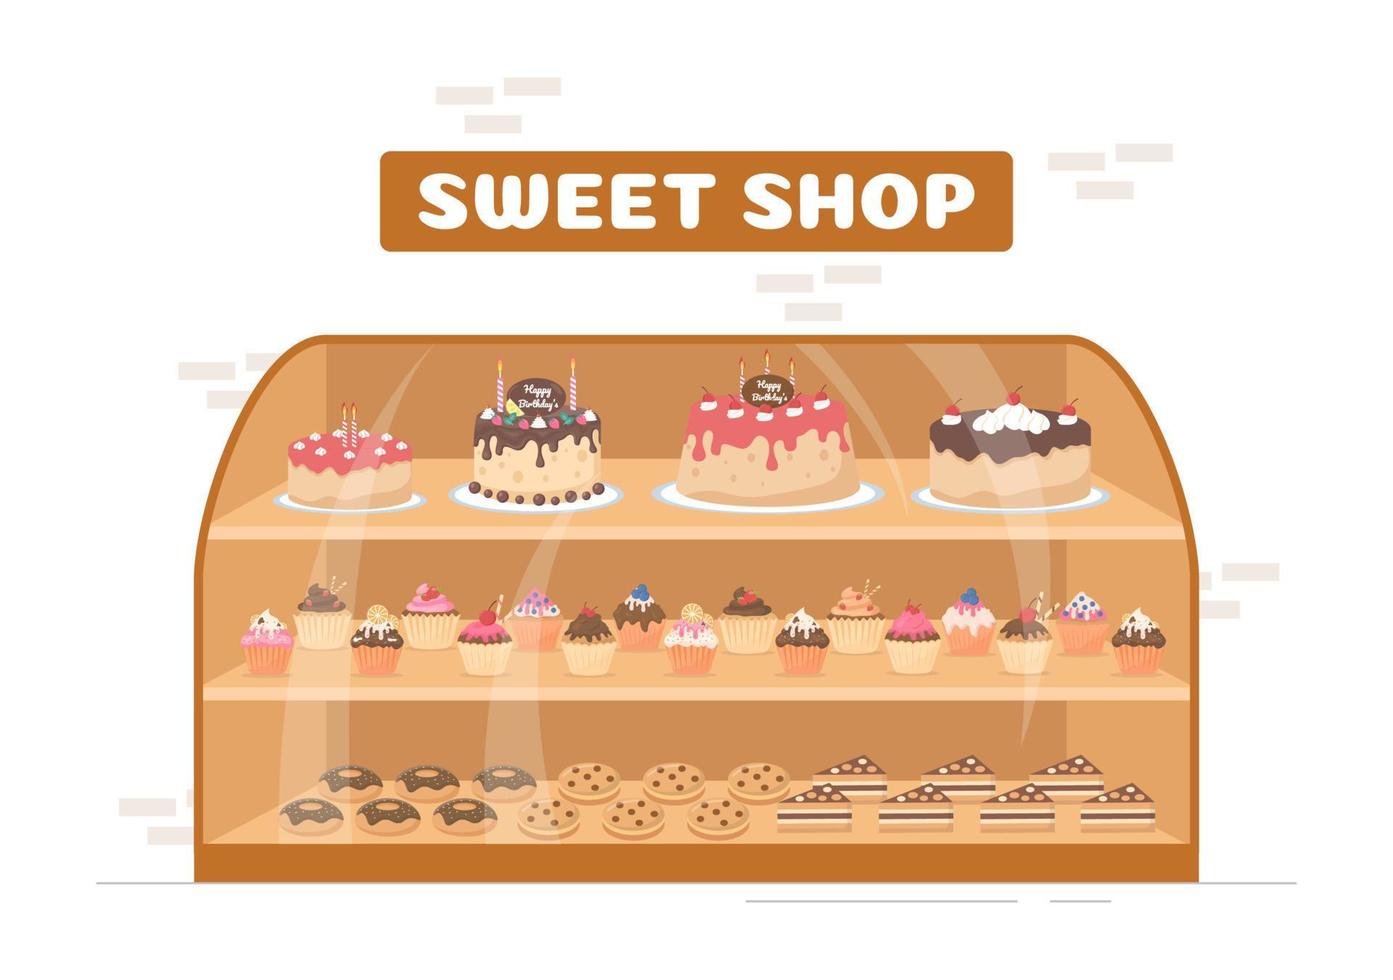 tienda de dulces que vende varios productos de panadería, magdalenas, pasteles, pasteles o dulces en dibujos animados planos dibujados a mano ilustración de plantillas vector